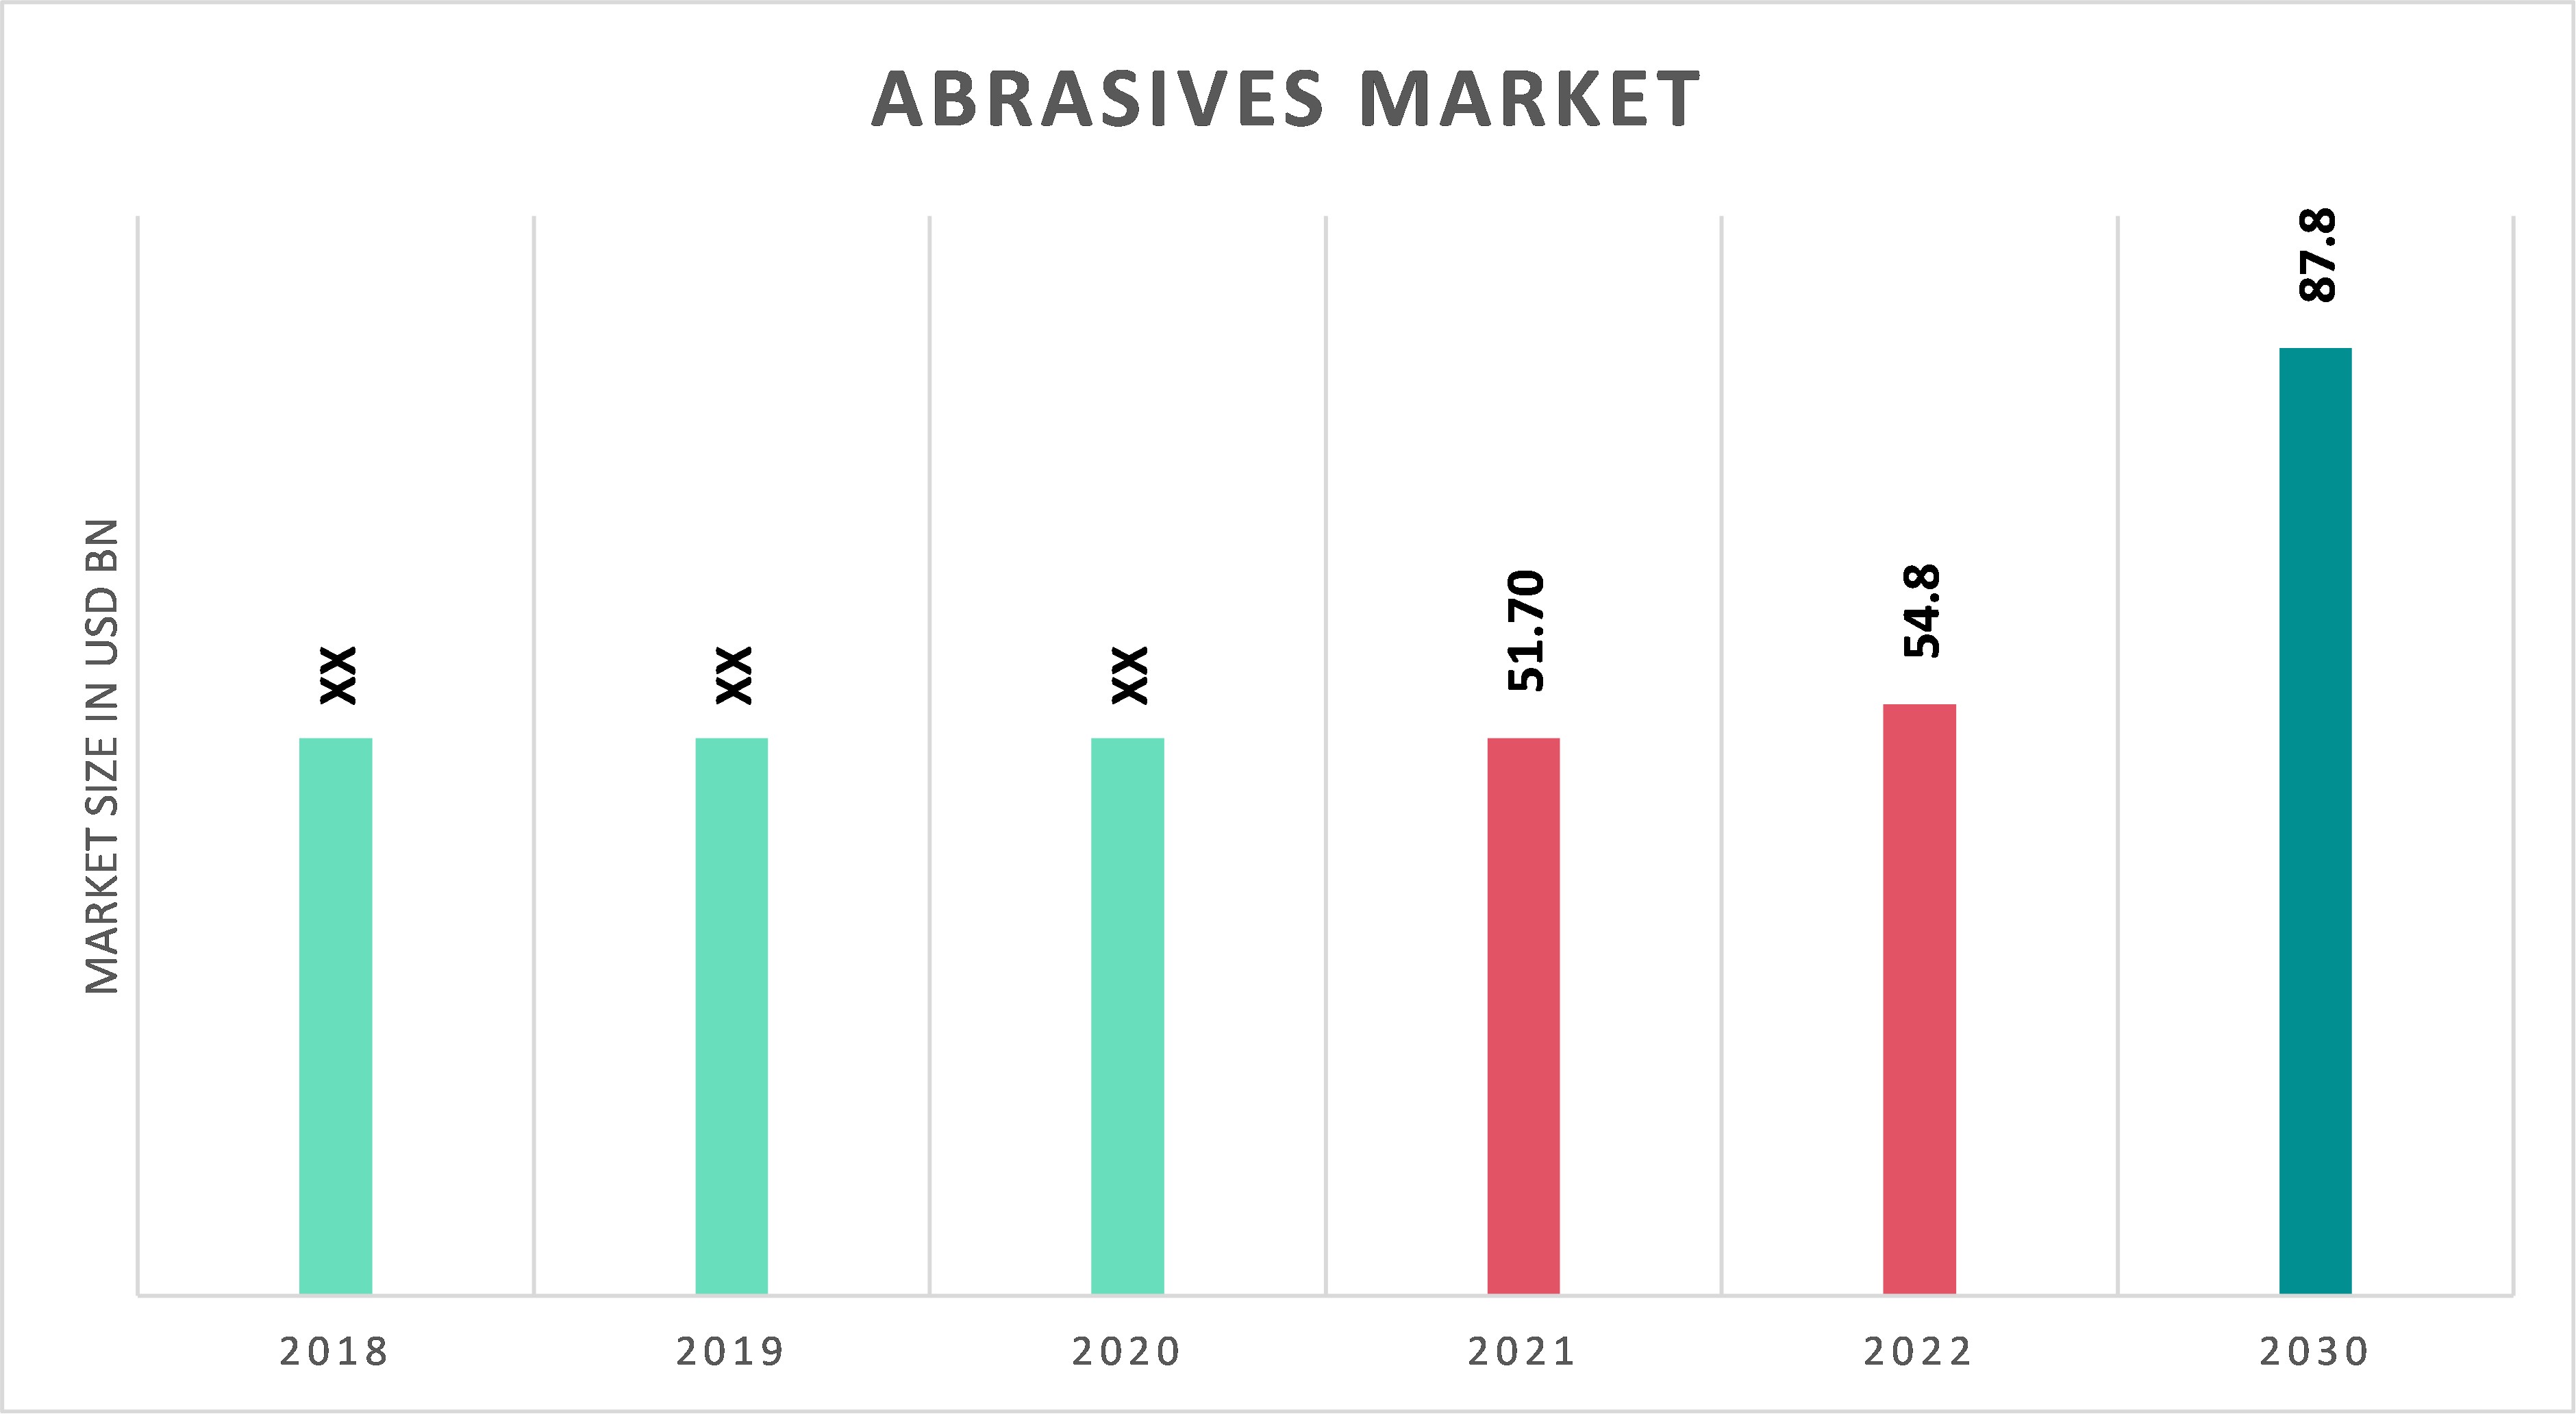 Global Abrasives Market